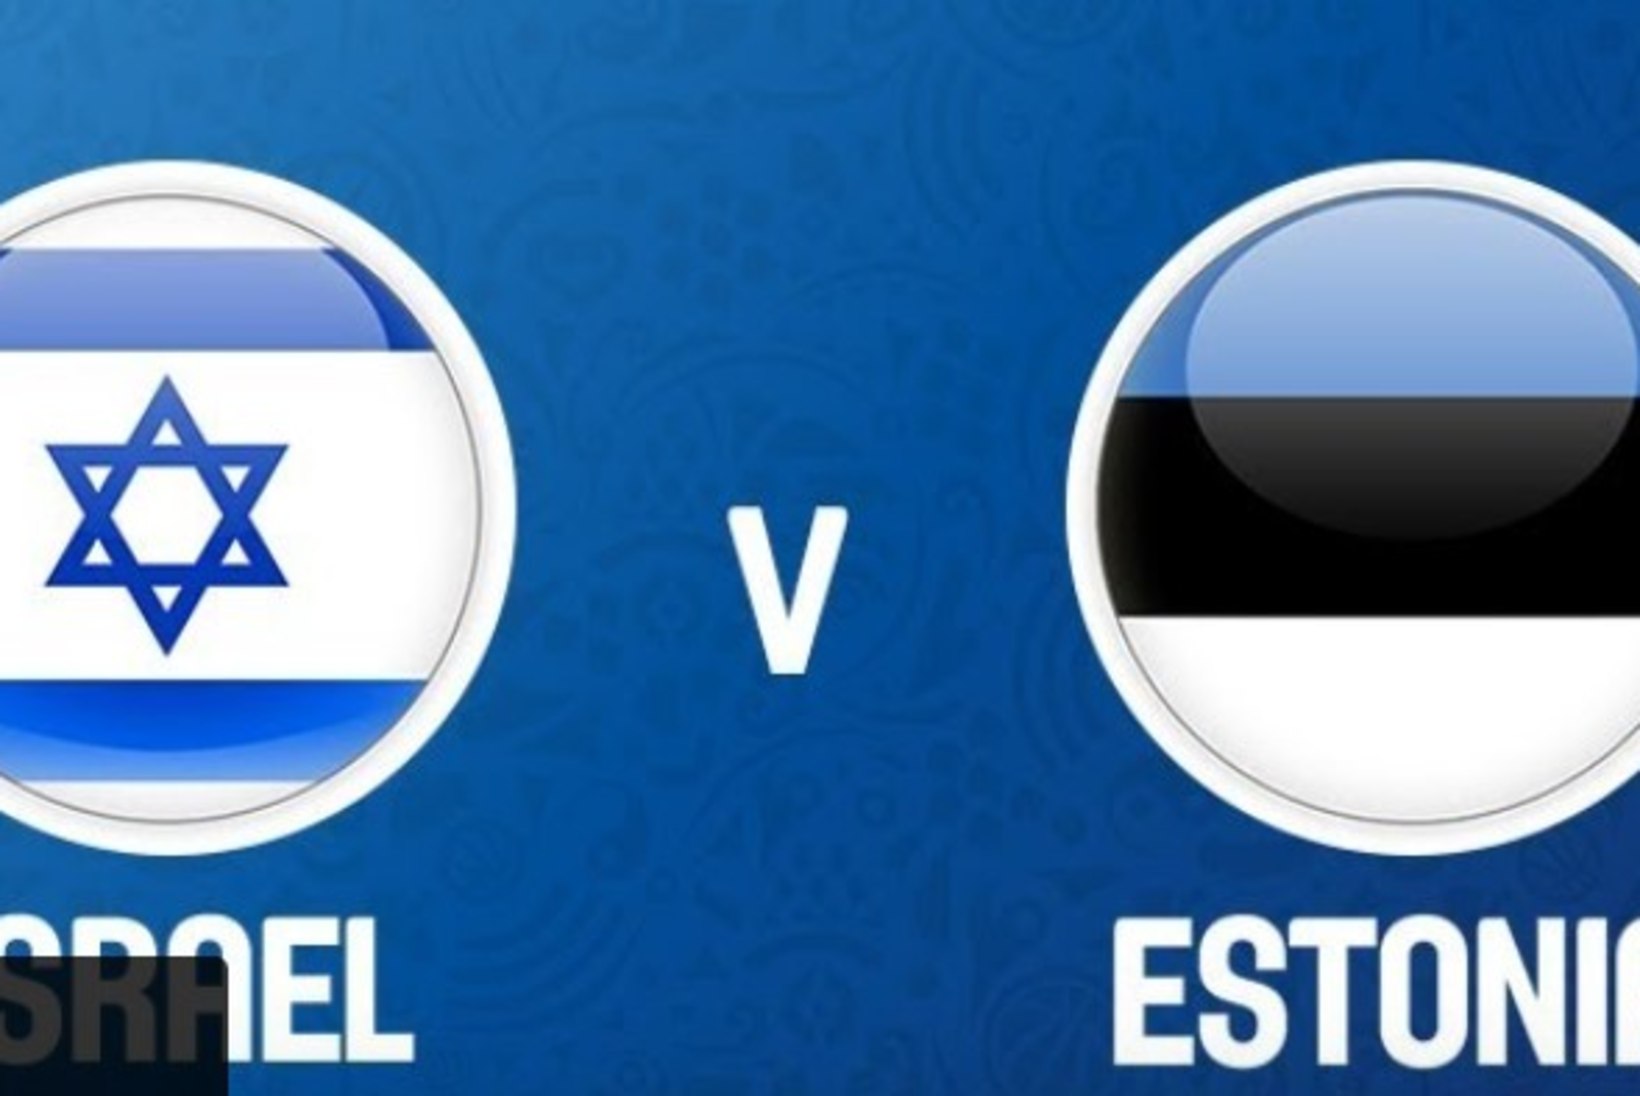 ÕHTULEHT TEL AVIVIS | Miks peetakse Iisraeli ja Eesti korvpallimäng nõnda varasel ajal?